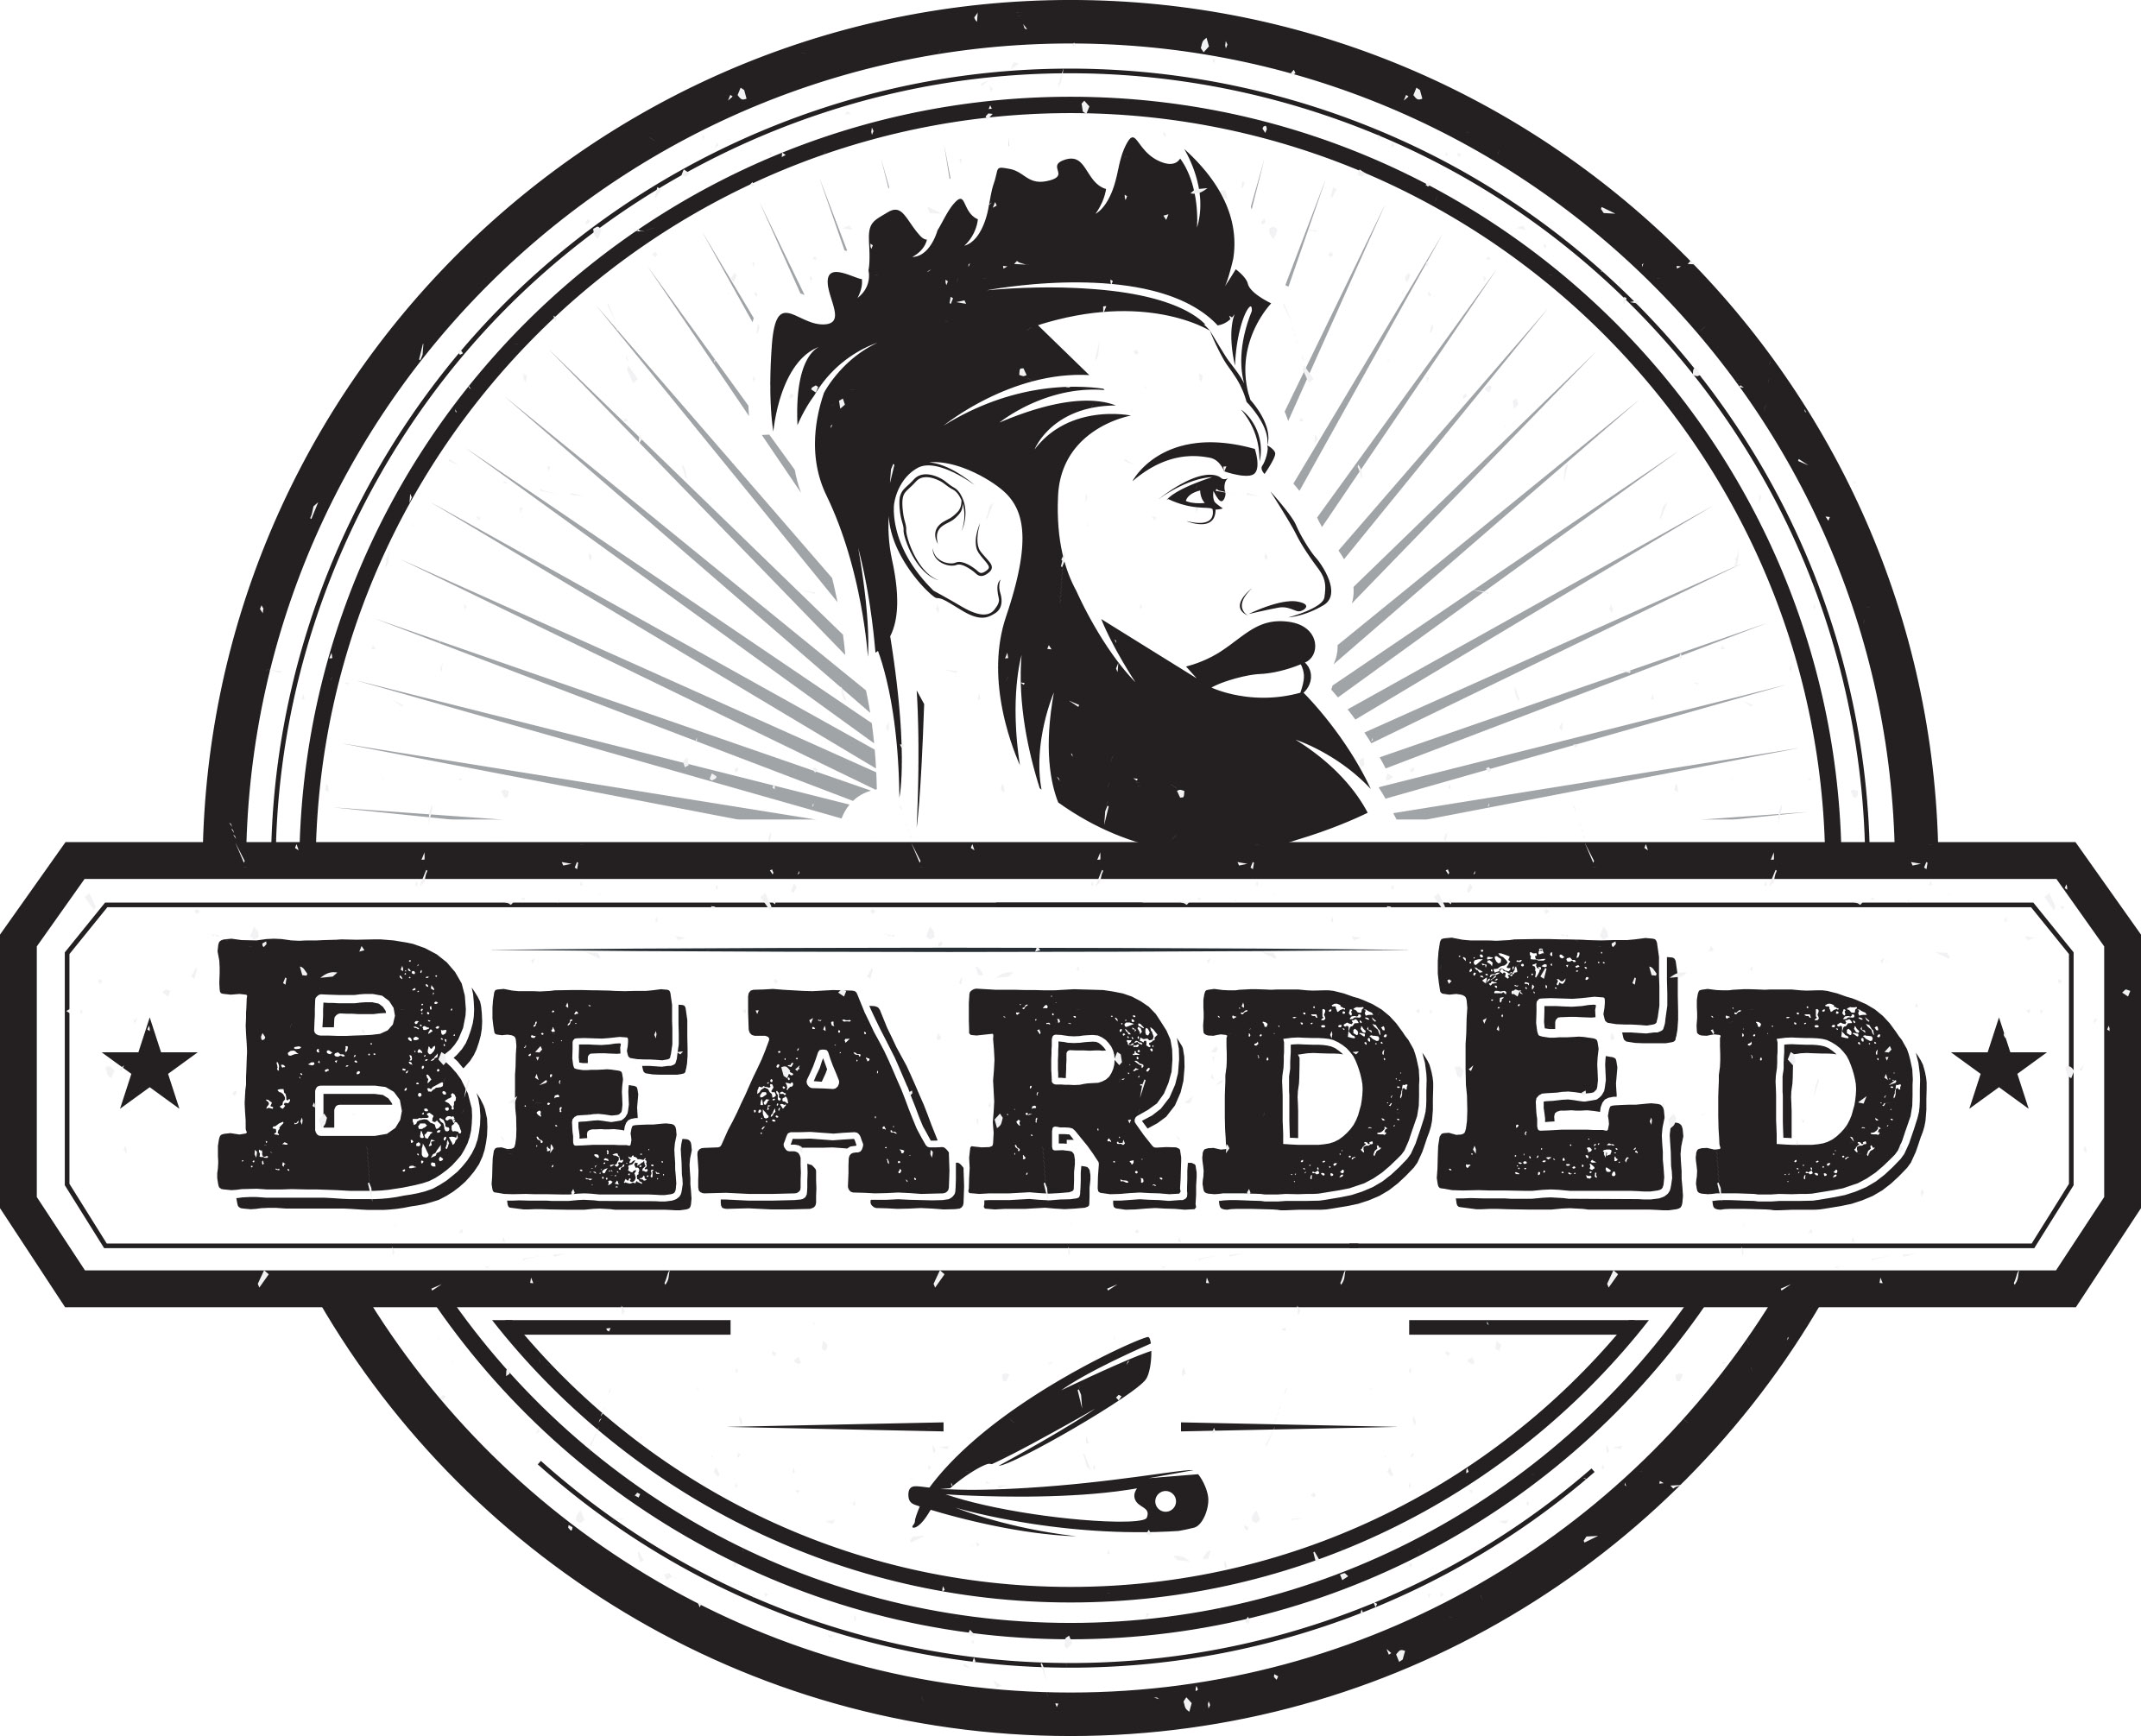 BeardEd